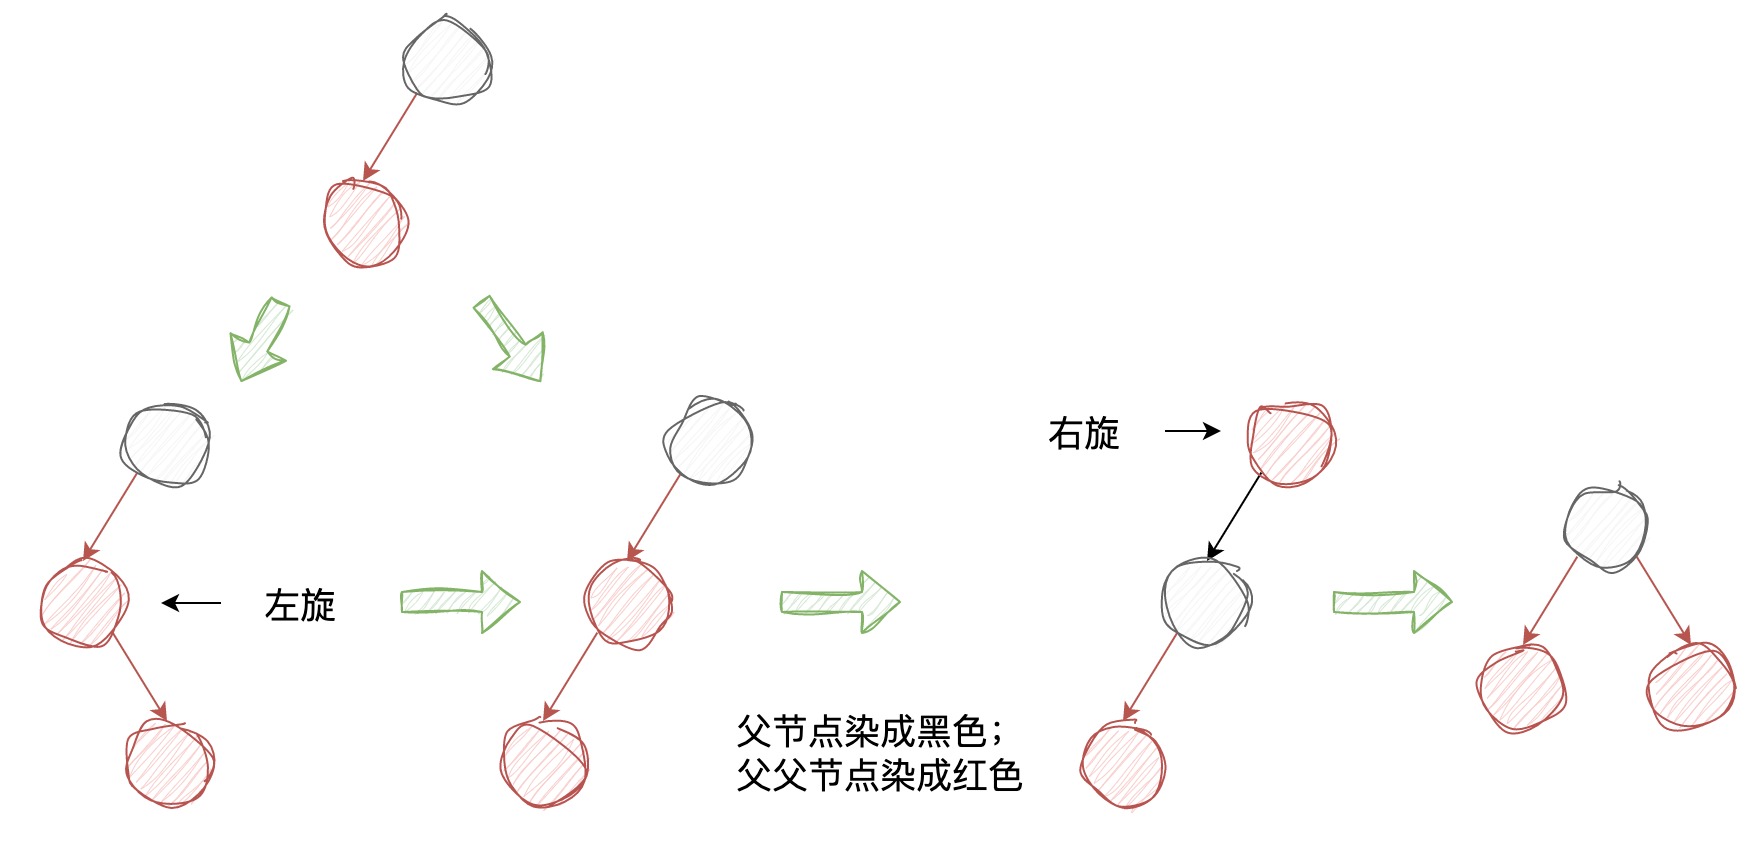 深入理解经典红黑树 | 京东物流技术团队